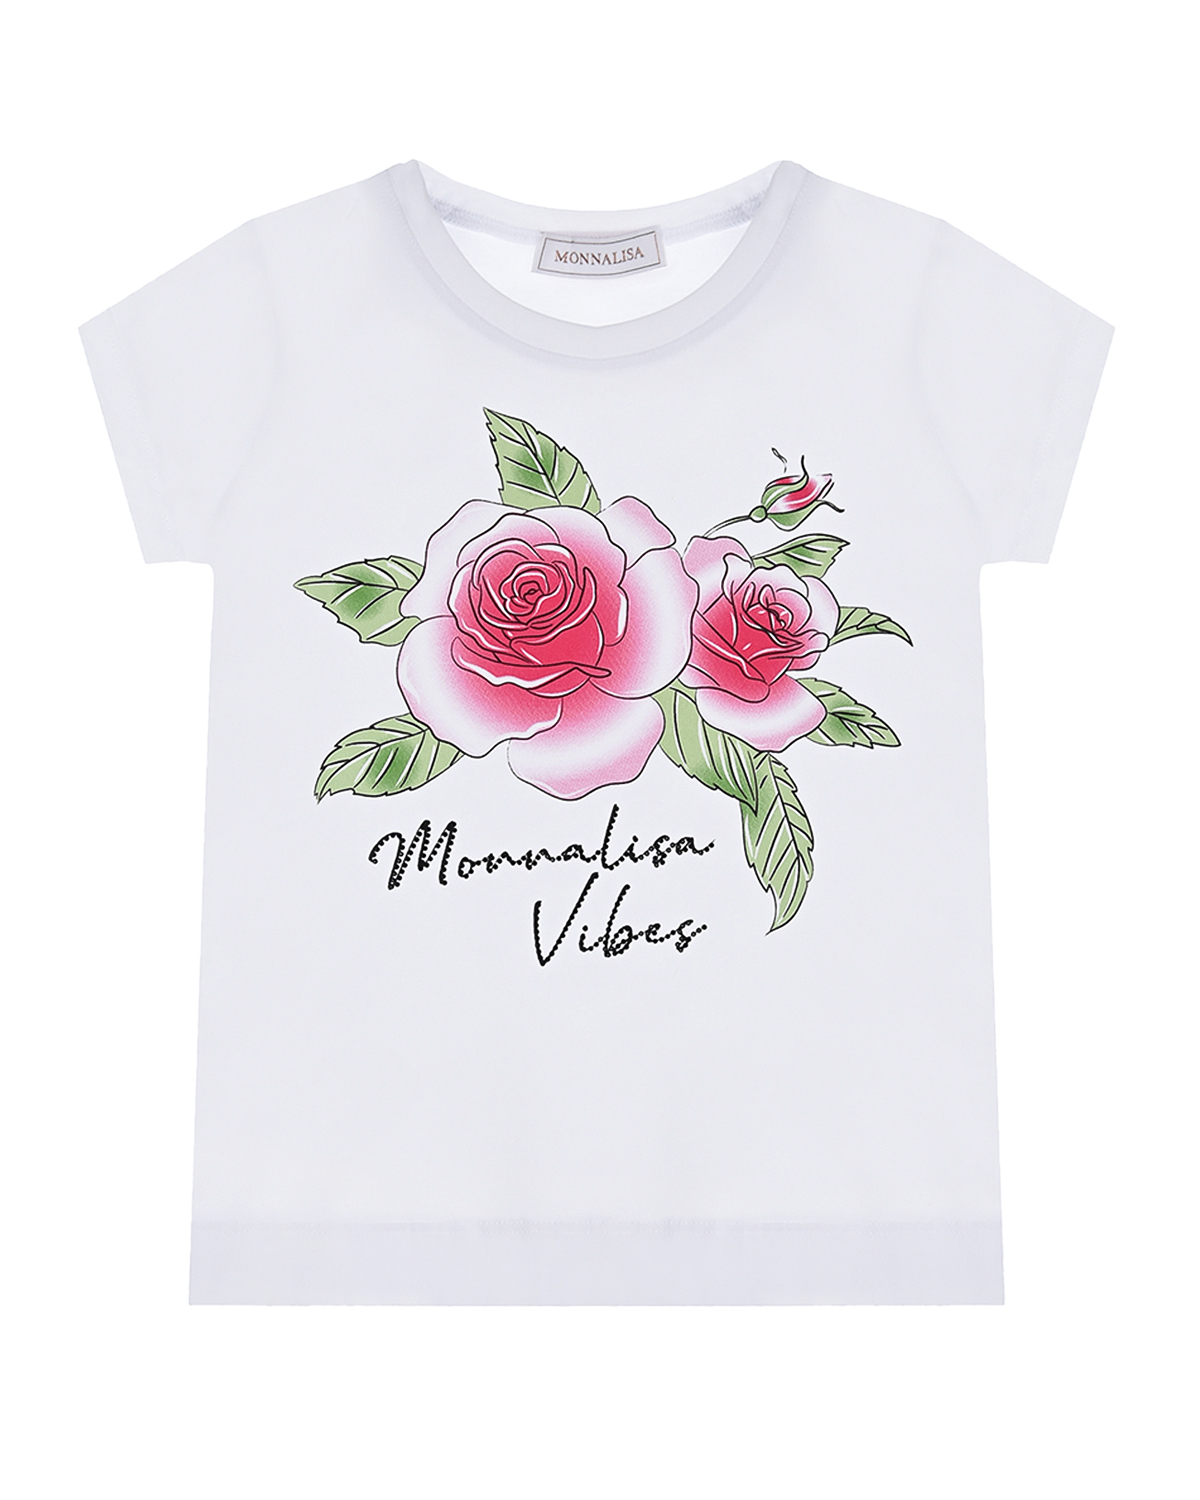 Купить Белая футболка с принтом розы Monnalisa детская, Белый, 95%хлопок+5%эластан